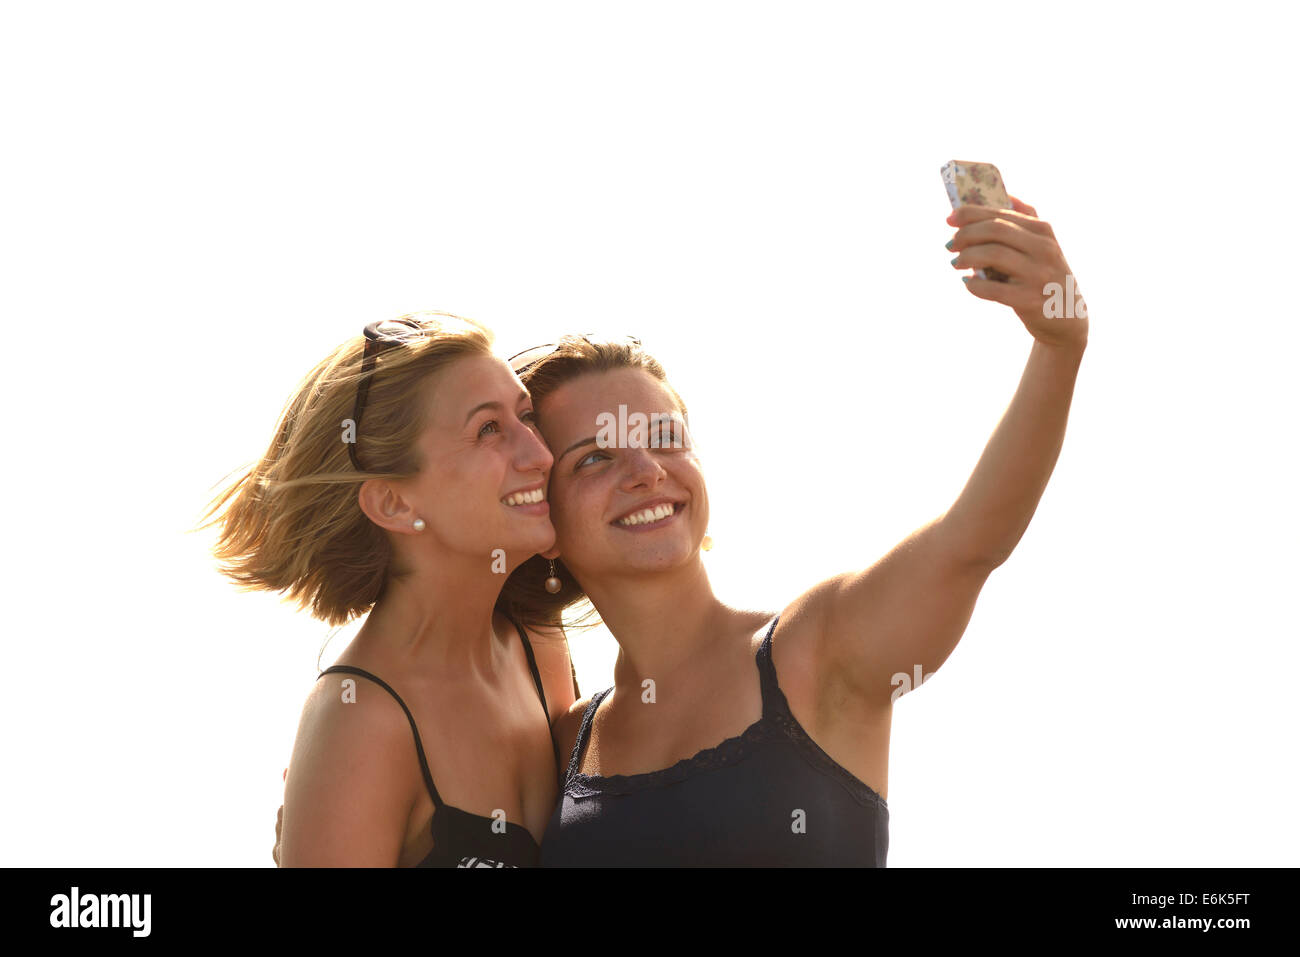 Selfie, due giovani donne che prendono un autoritratto con un telefono cellulare, Lanzarote, Isole Canarie, Spagna Foto Stock